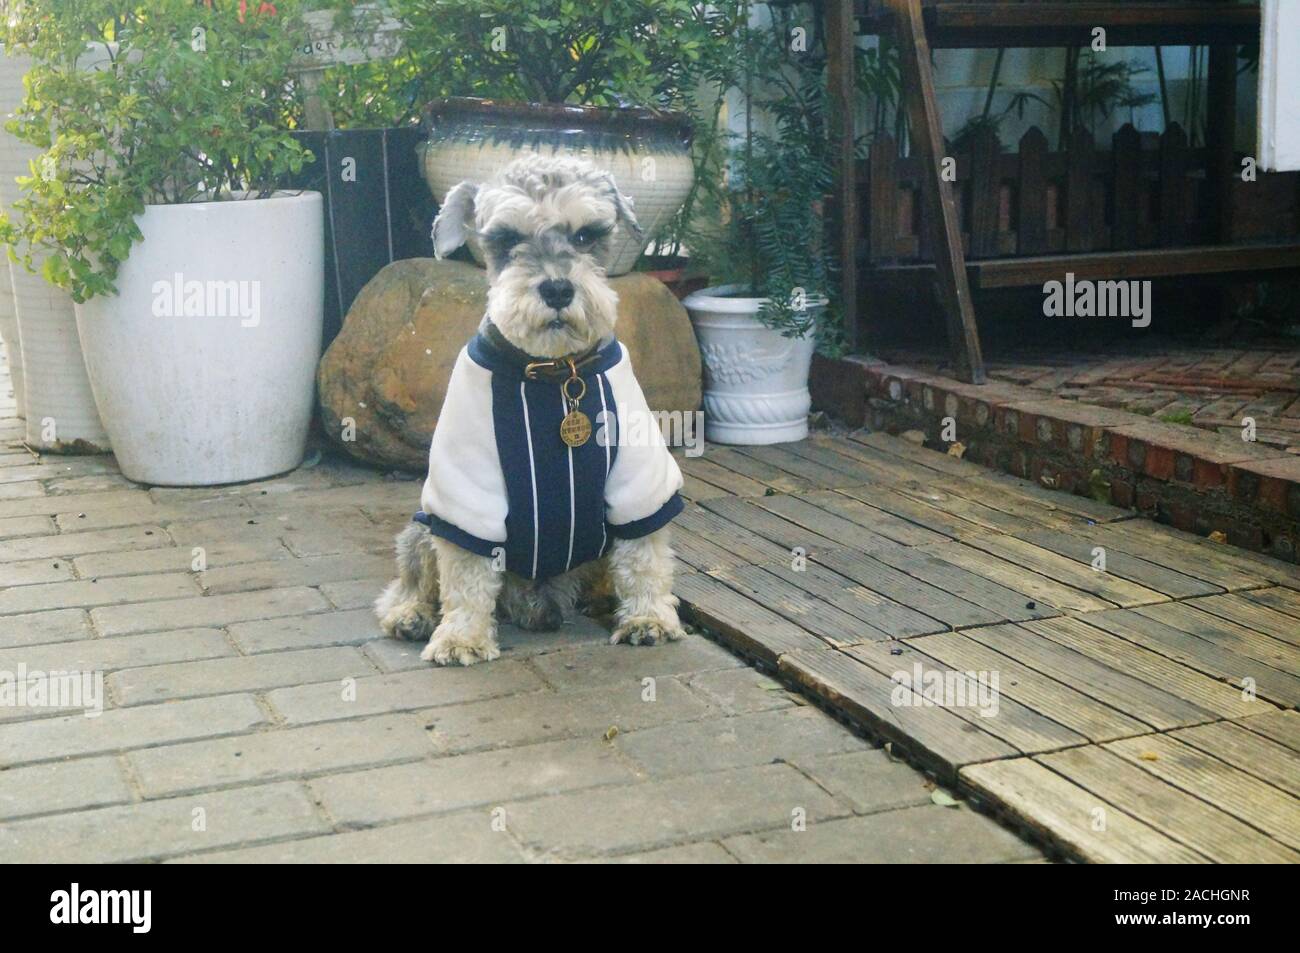 El clima es frío, el perro mascota vestida, se ve Lindo y adorable Foto de stock